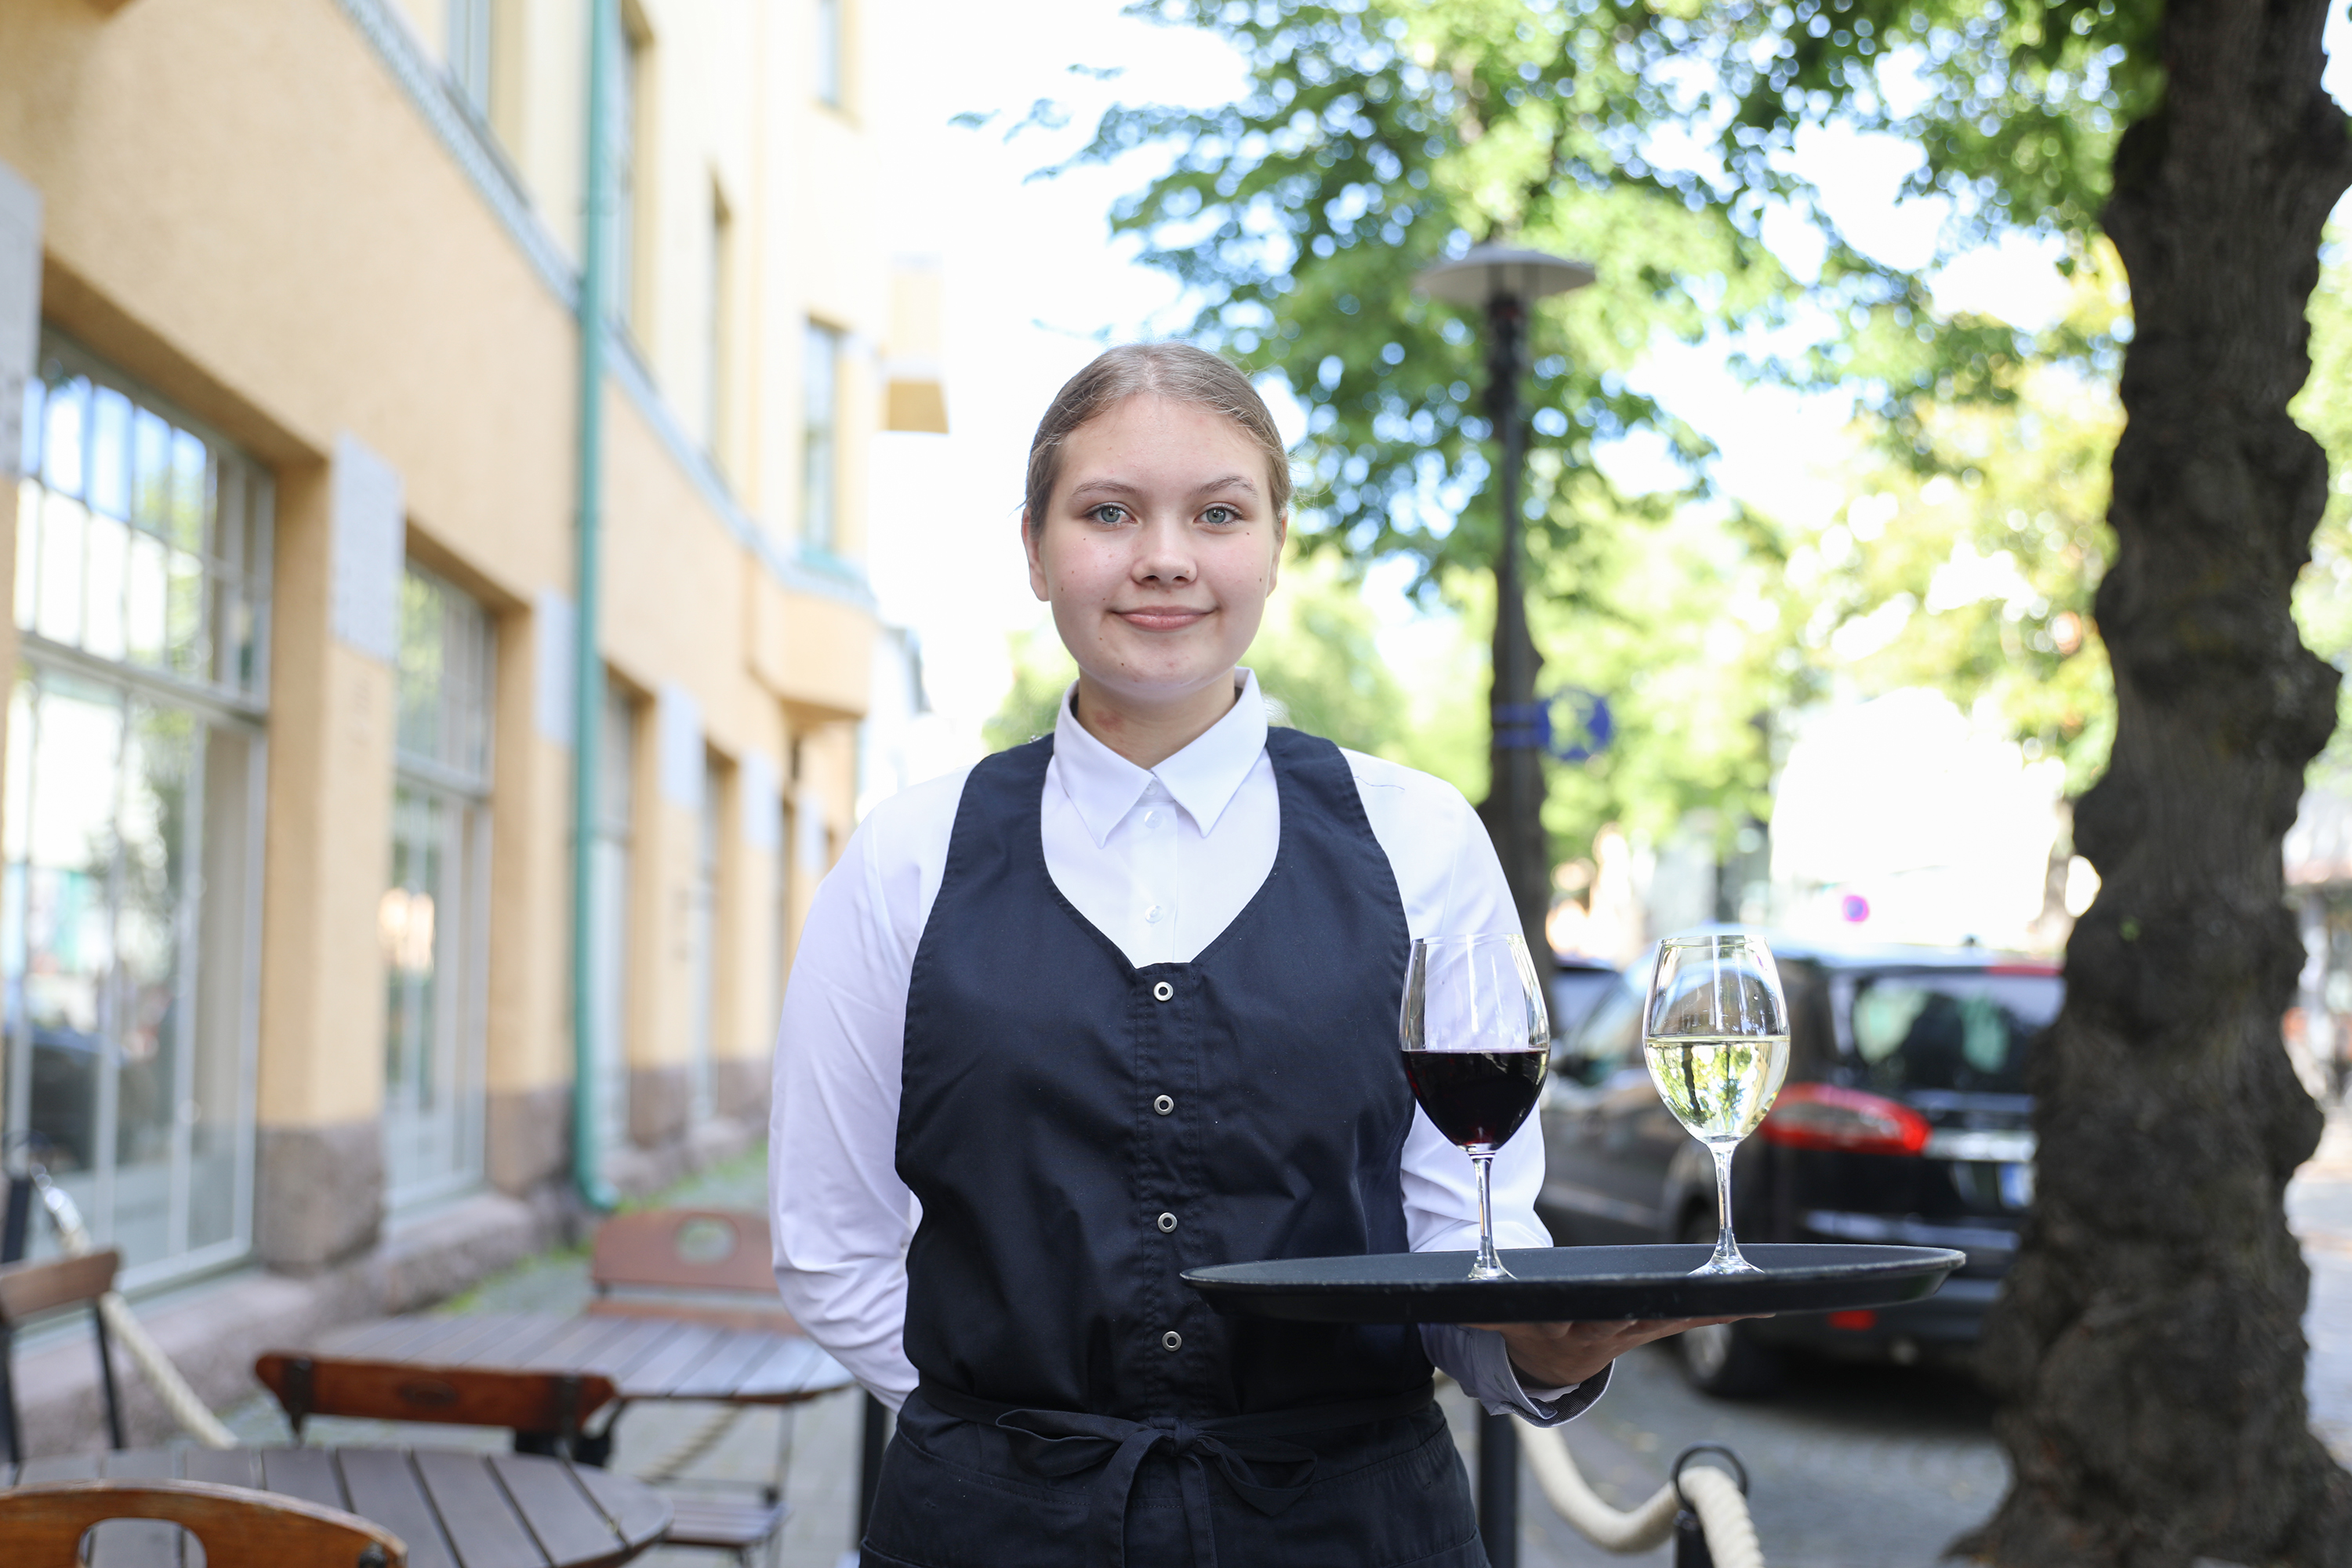 Kuvassa ravintola- cateringalan opiskelija Ronja Högland poseeraa tarjoilijan vaatteissa viinilasien kera ravintola Kokkolinnan edustalla. 